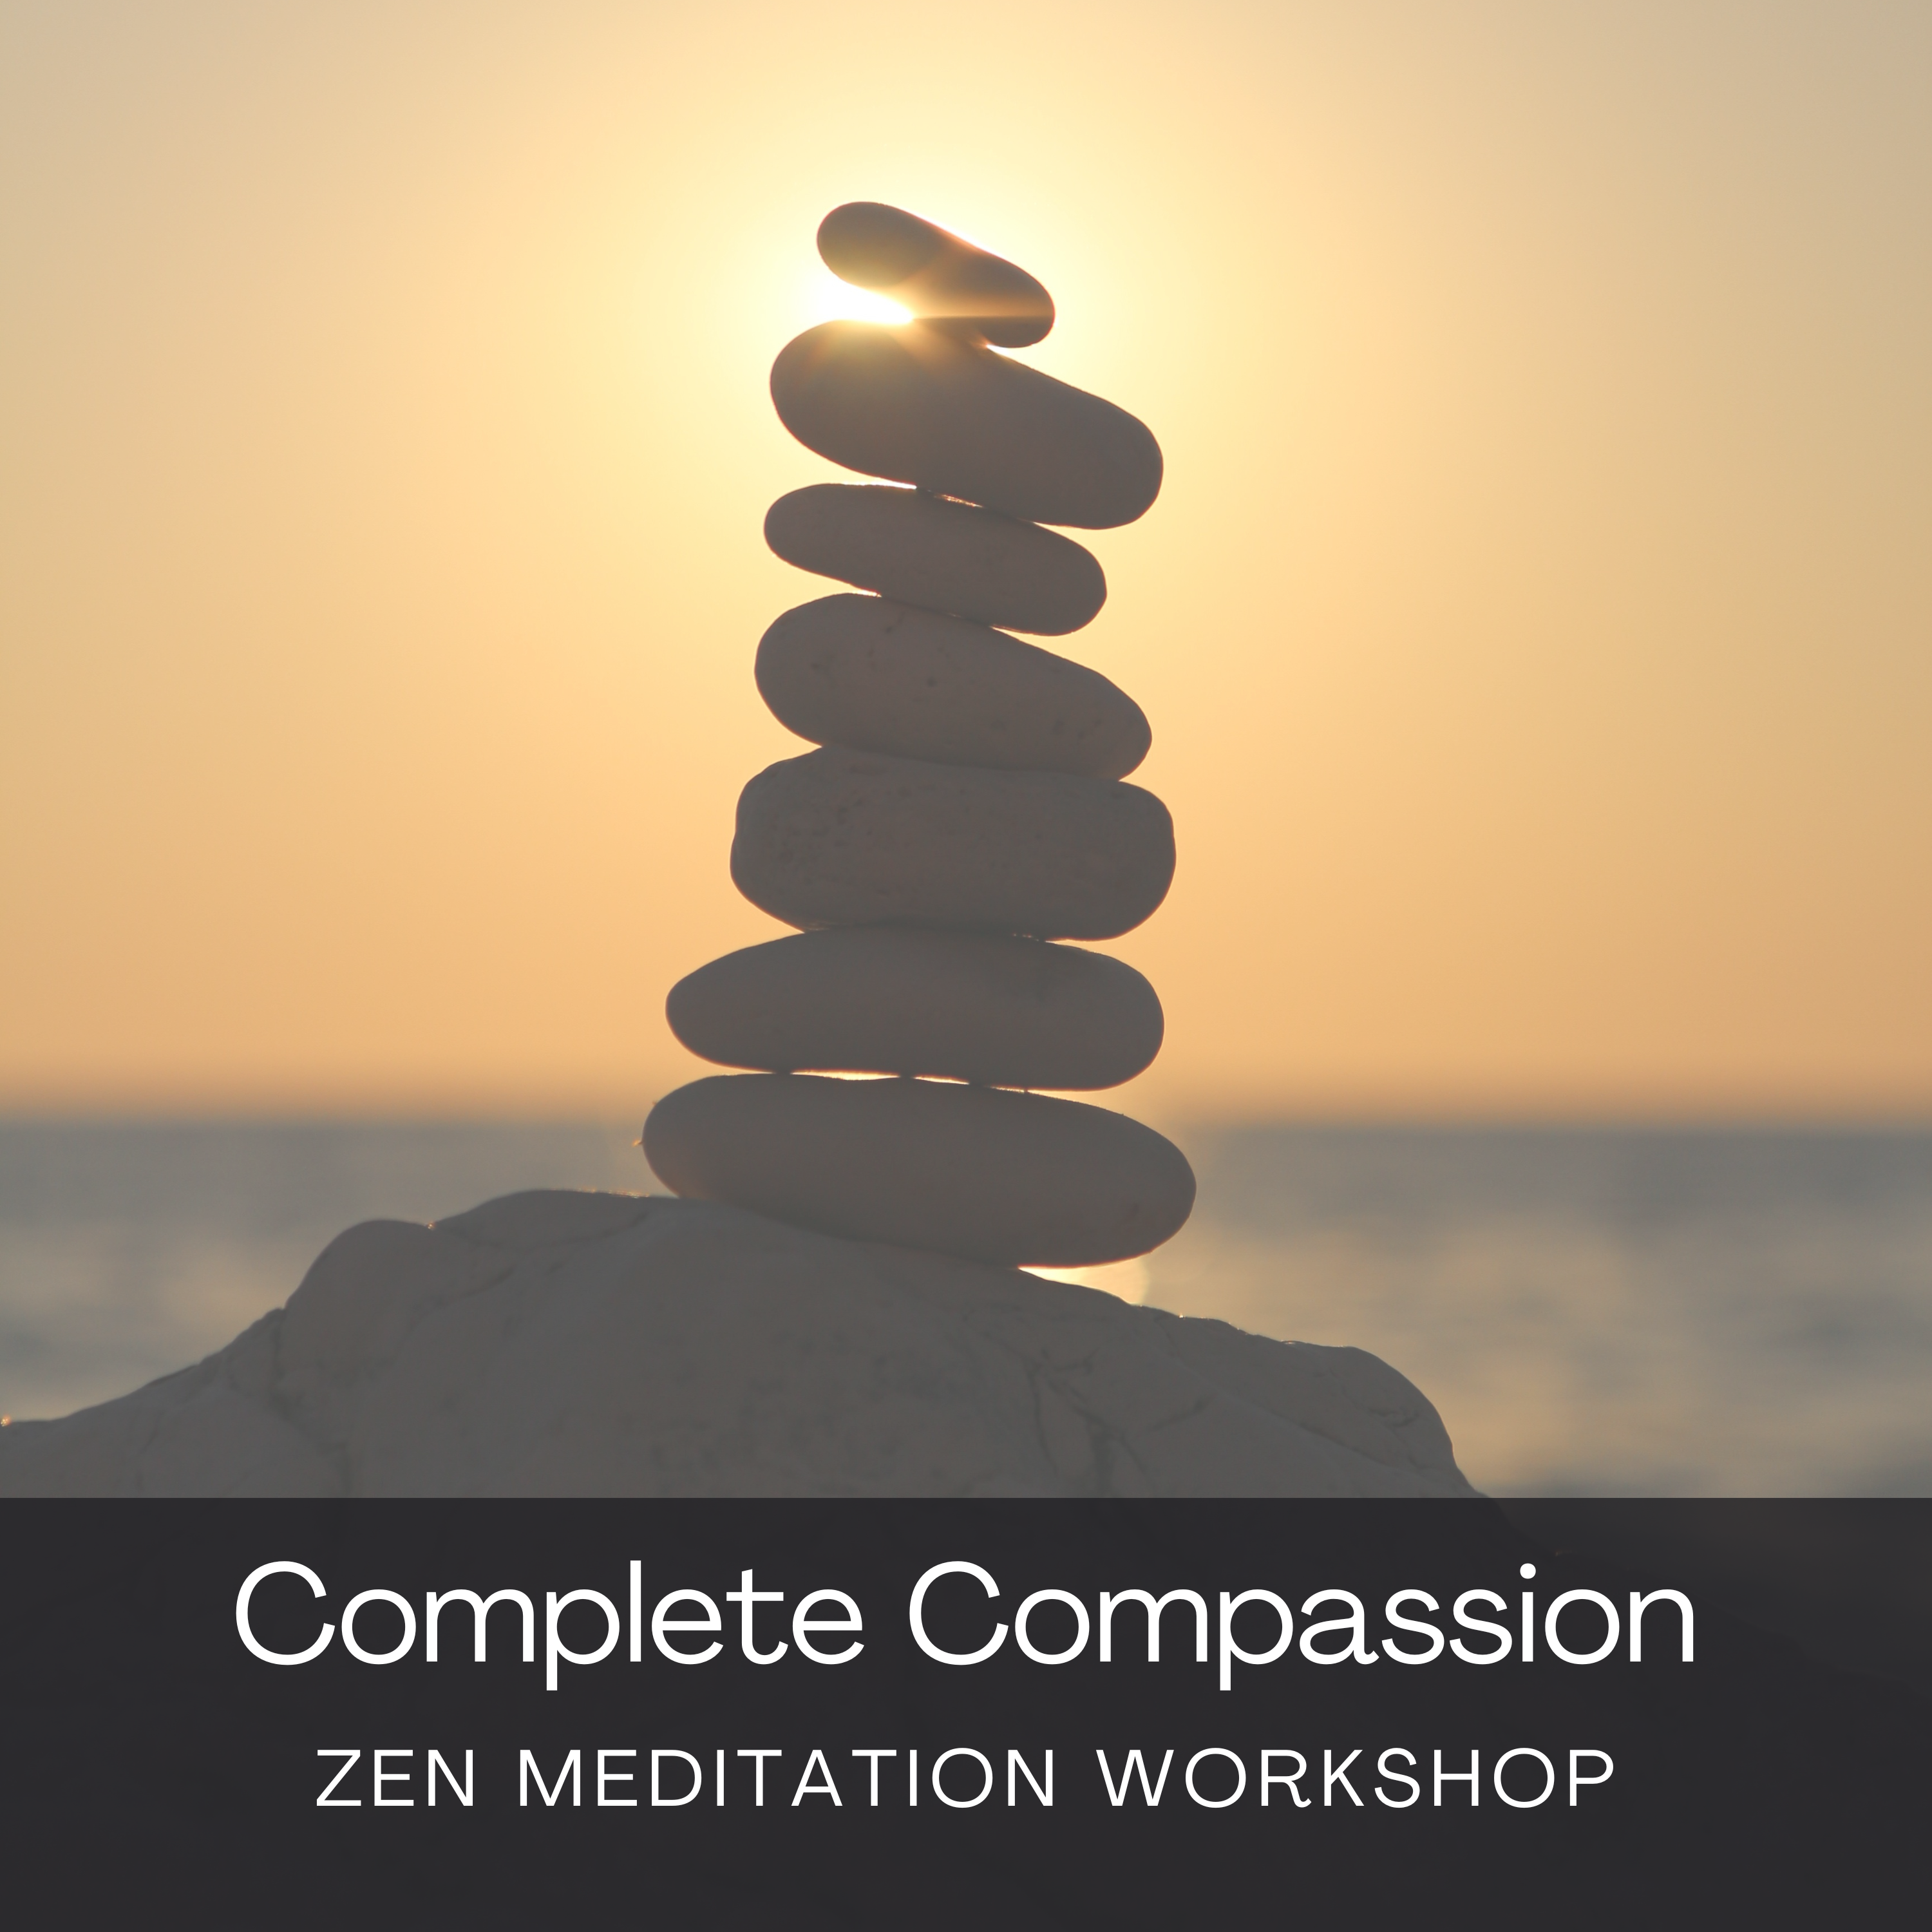 Complete Compassion - Zen Meditation Workshop